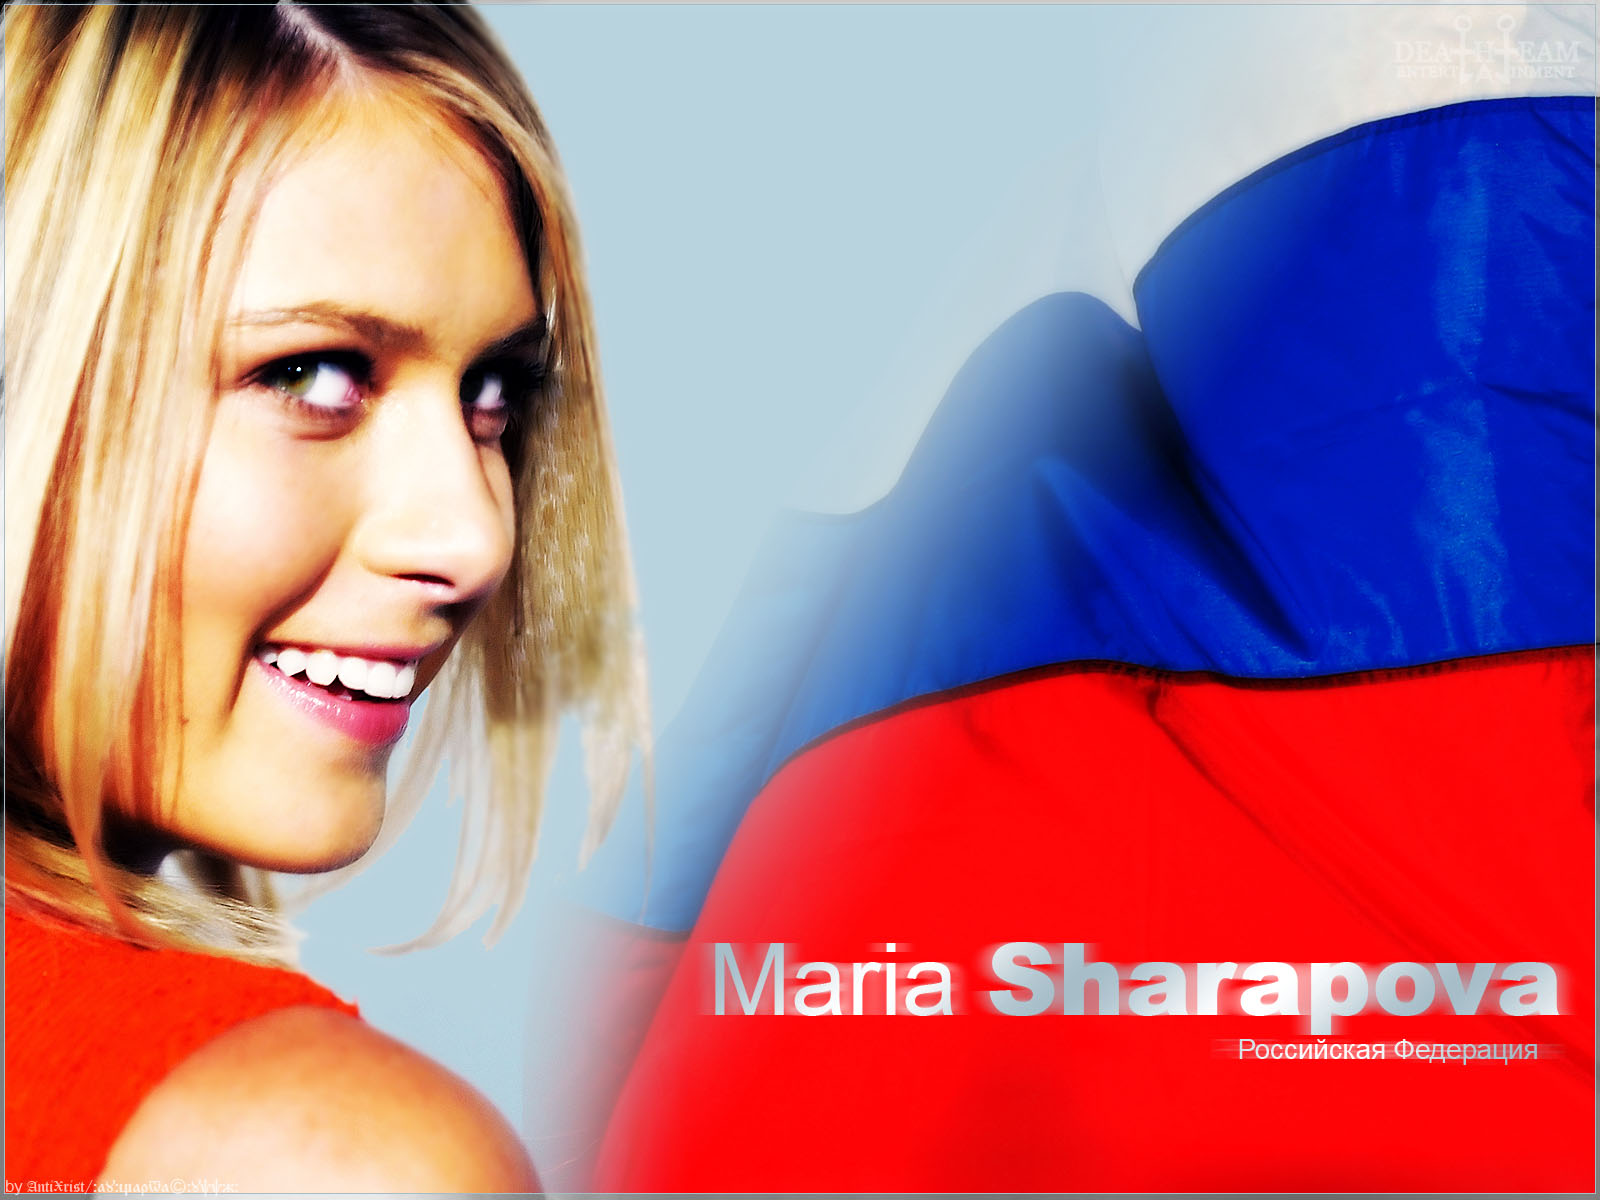 Sharapova Maria Media Backgrounds